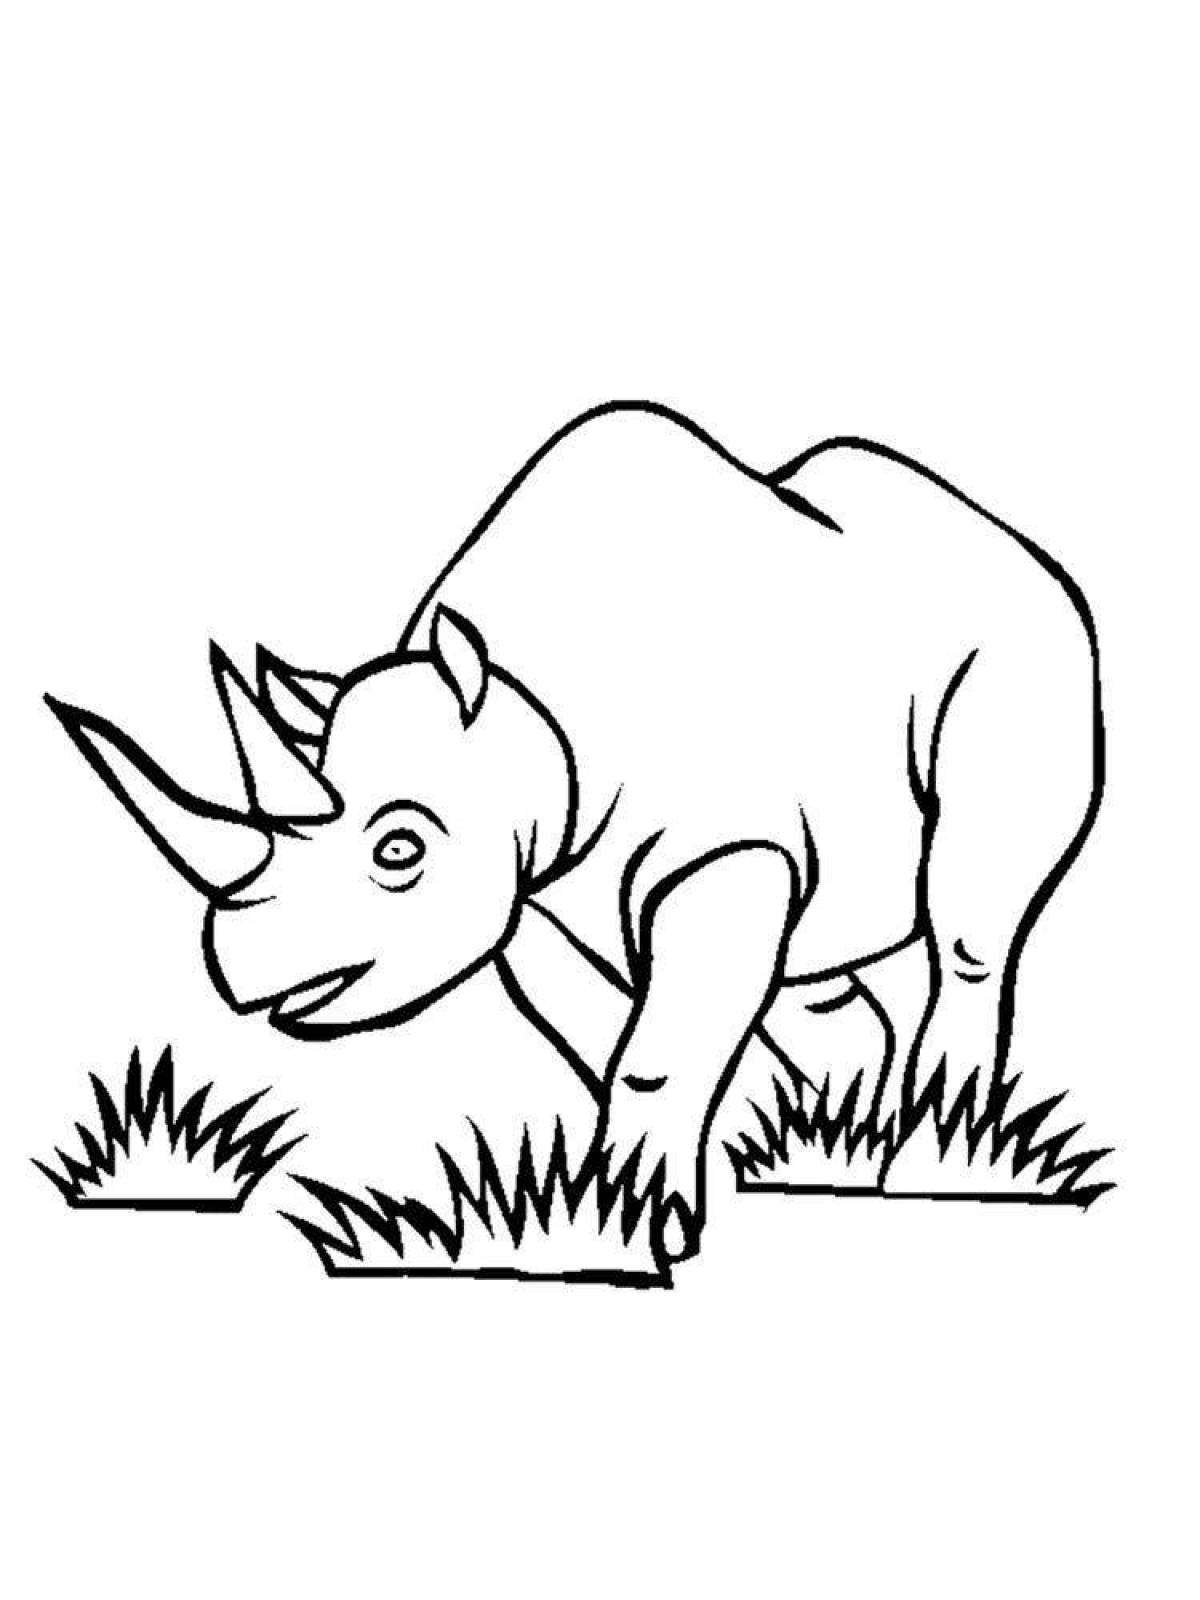 Игривая раскраска носорога для детей